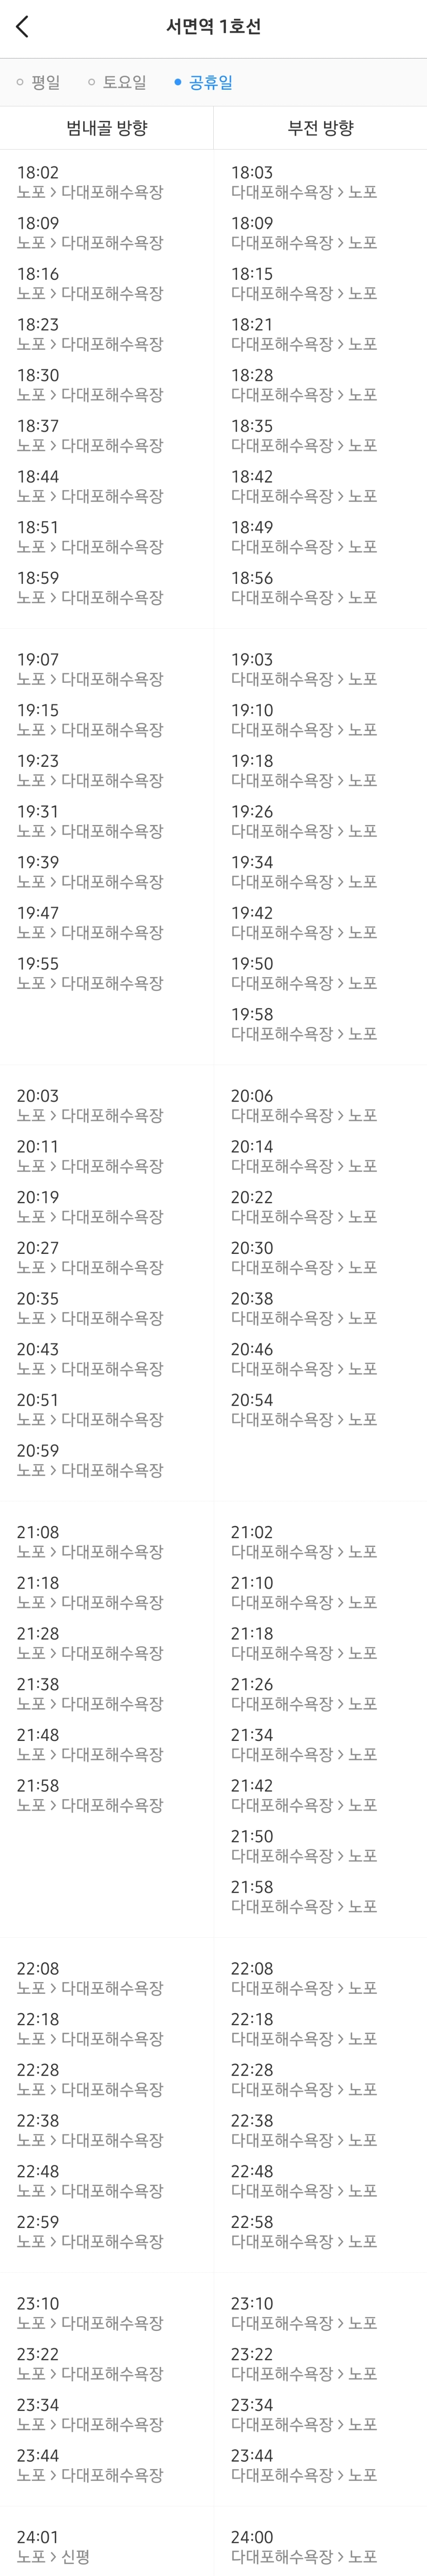 부산 지하철 1호선 서면역 주말(공휴일) 저녁 열차 시간표